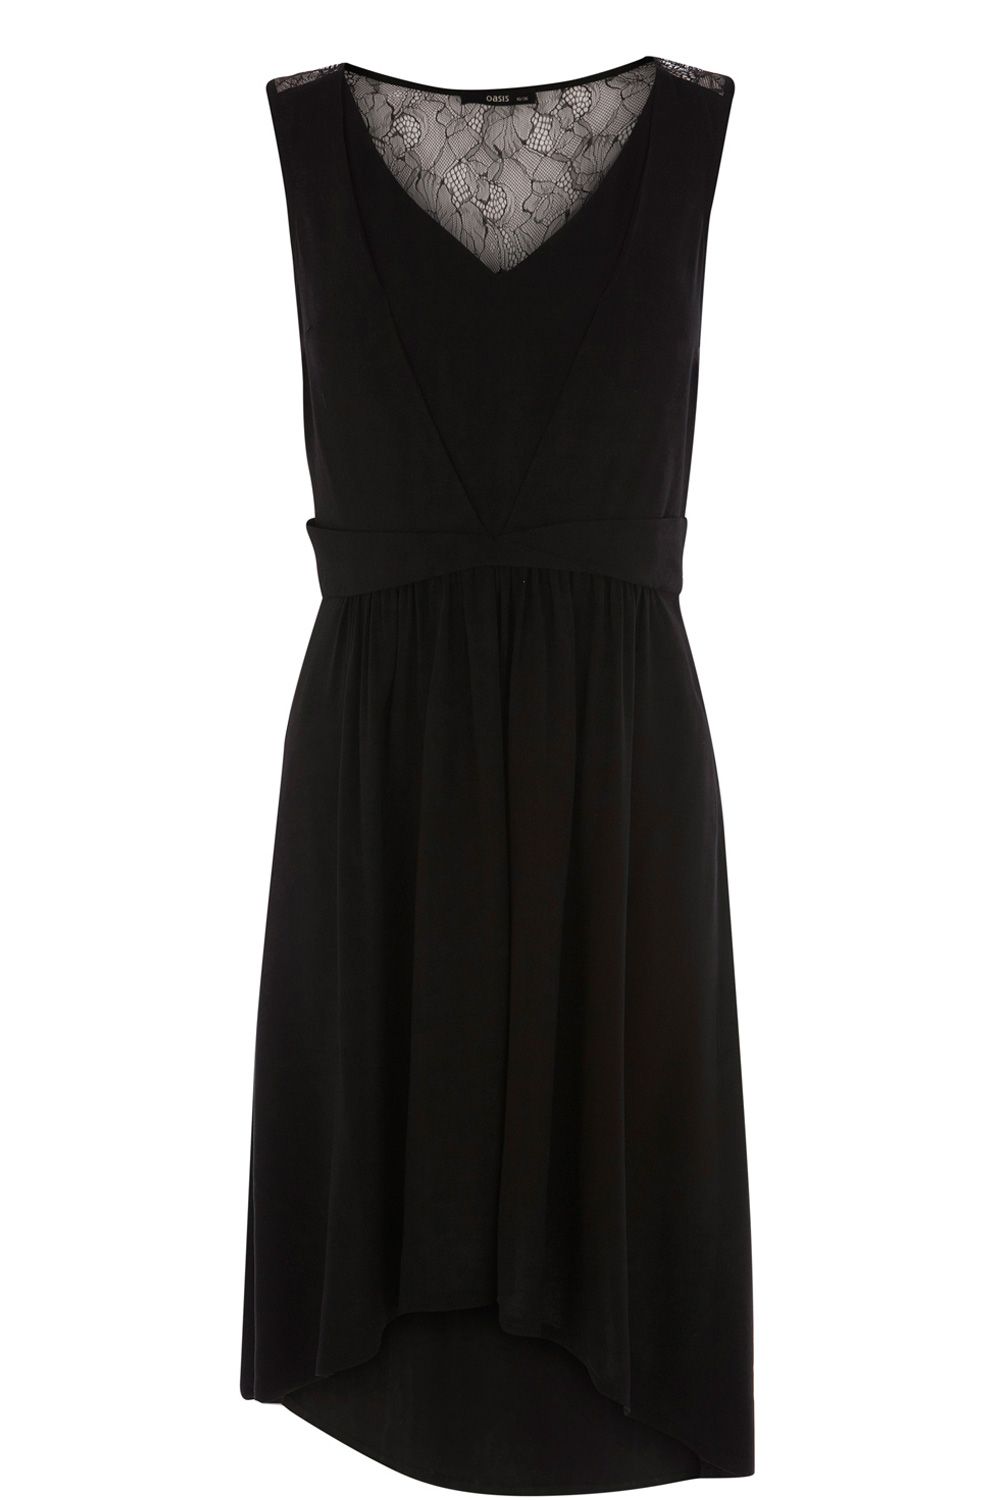 Oasis Lace Yoke Viscose Dress in Black | Lyst